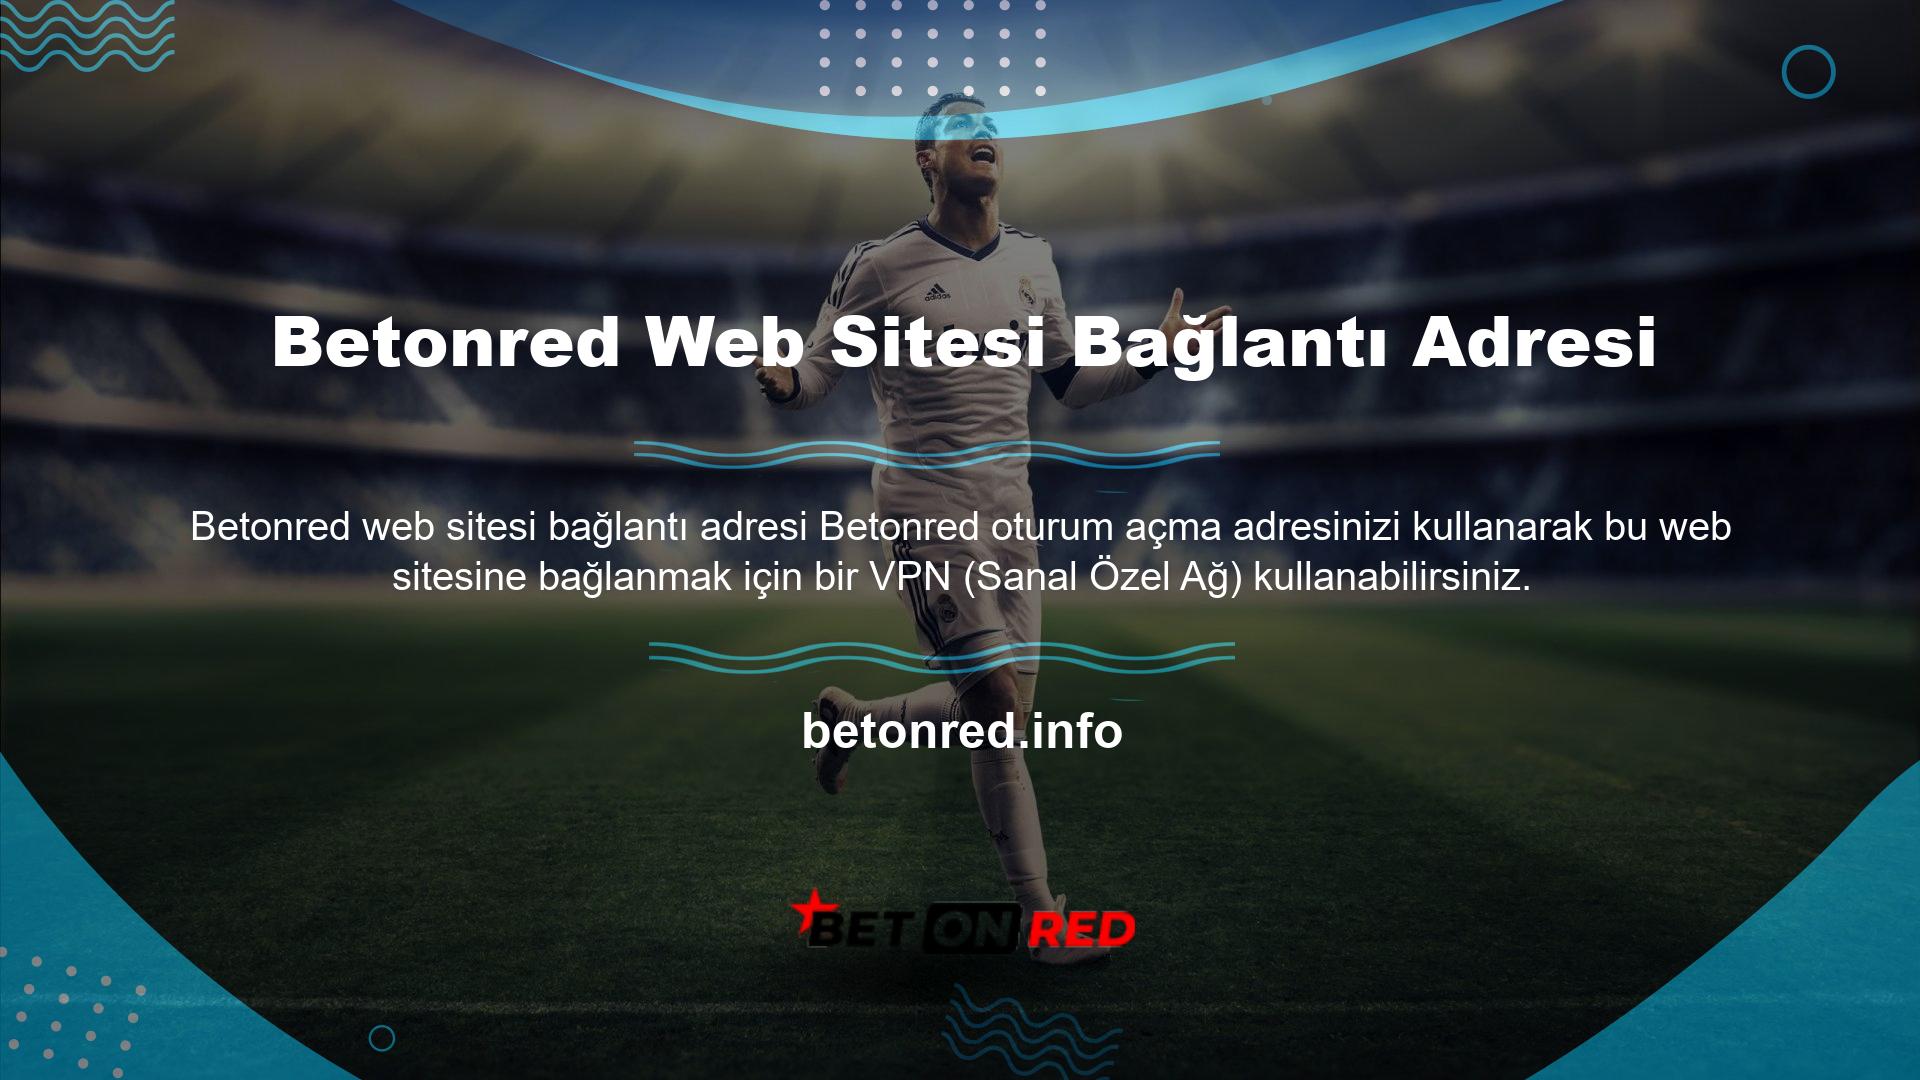 Türkiye dışından bir VPN kullanıyormuşsunuz gibi göründüğü için siteye yasaklanmadan erişebilirsiniz